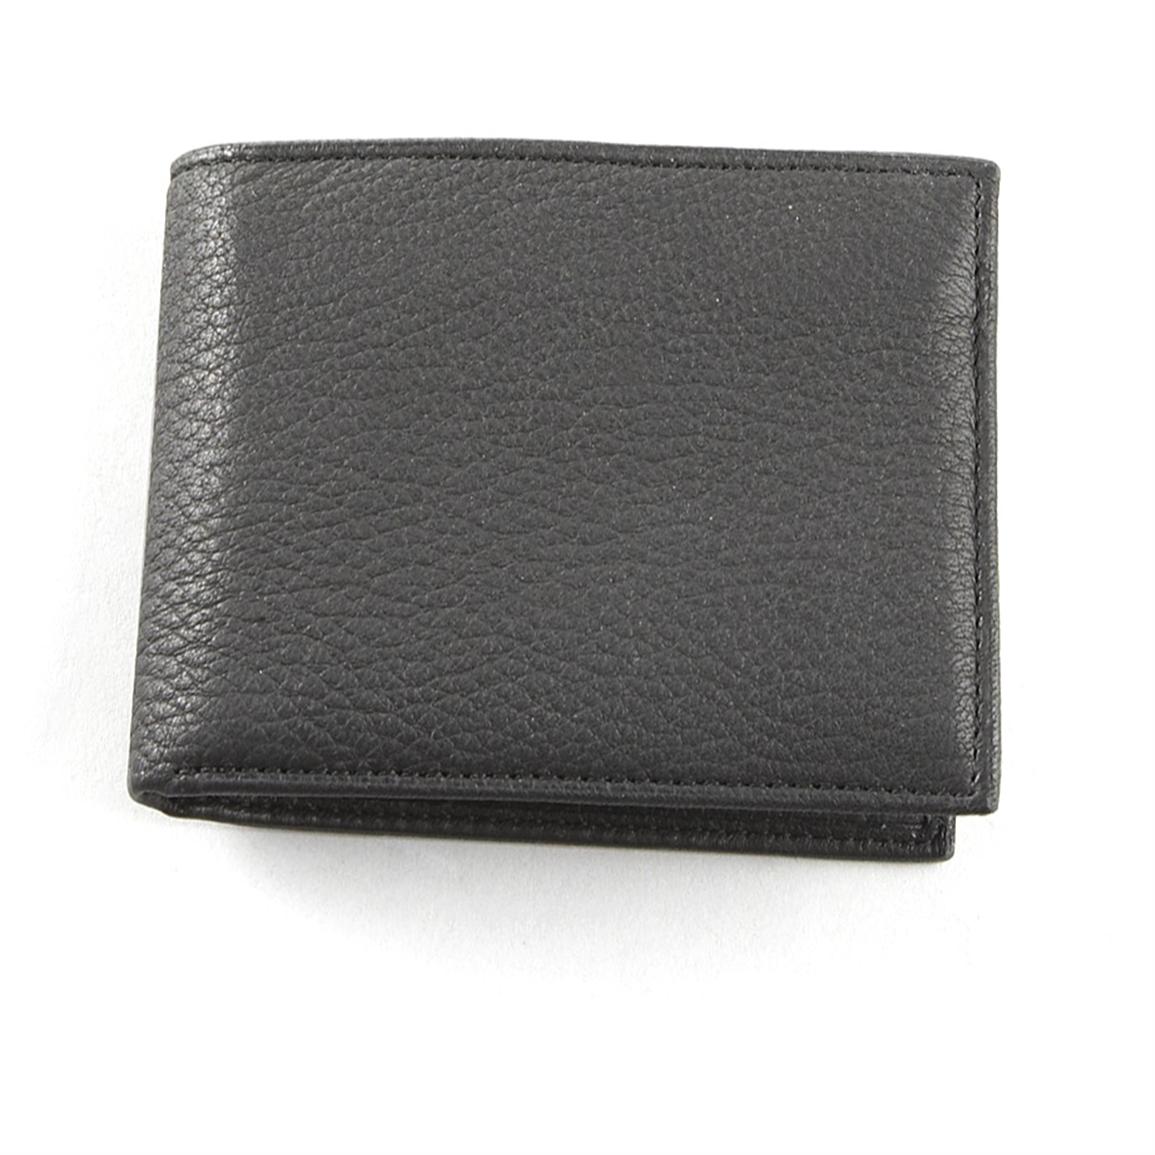 Woolrich® Elk Skin Leather Wallet - 191413, Wallets at Sportsman's Guide